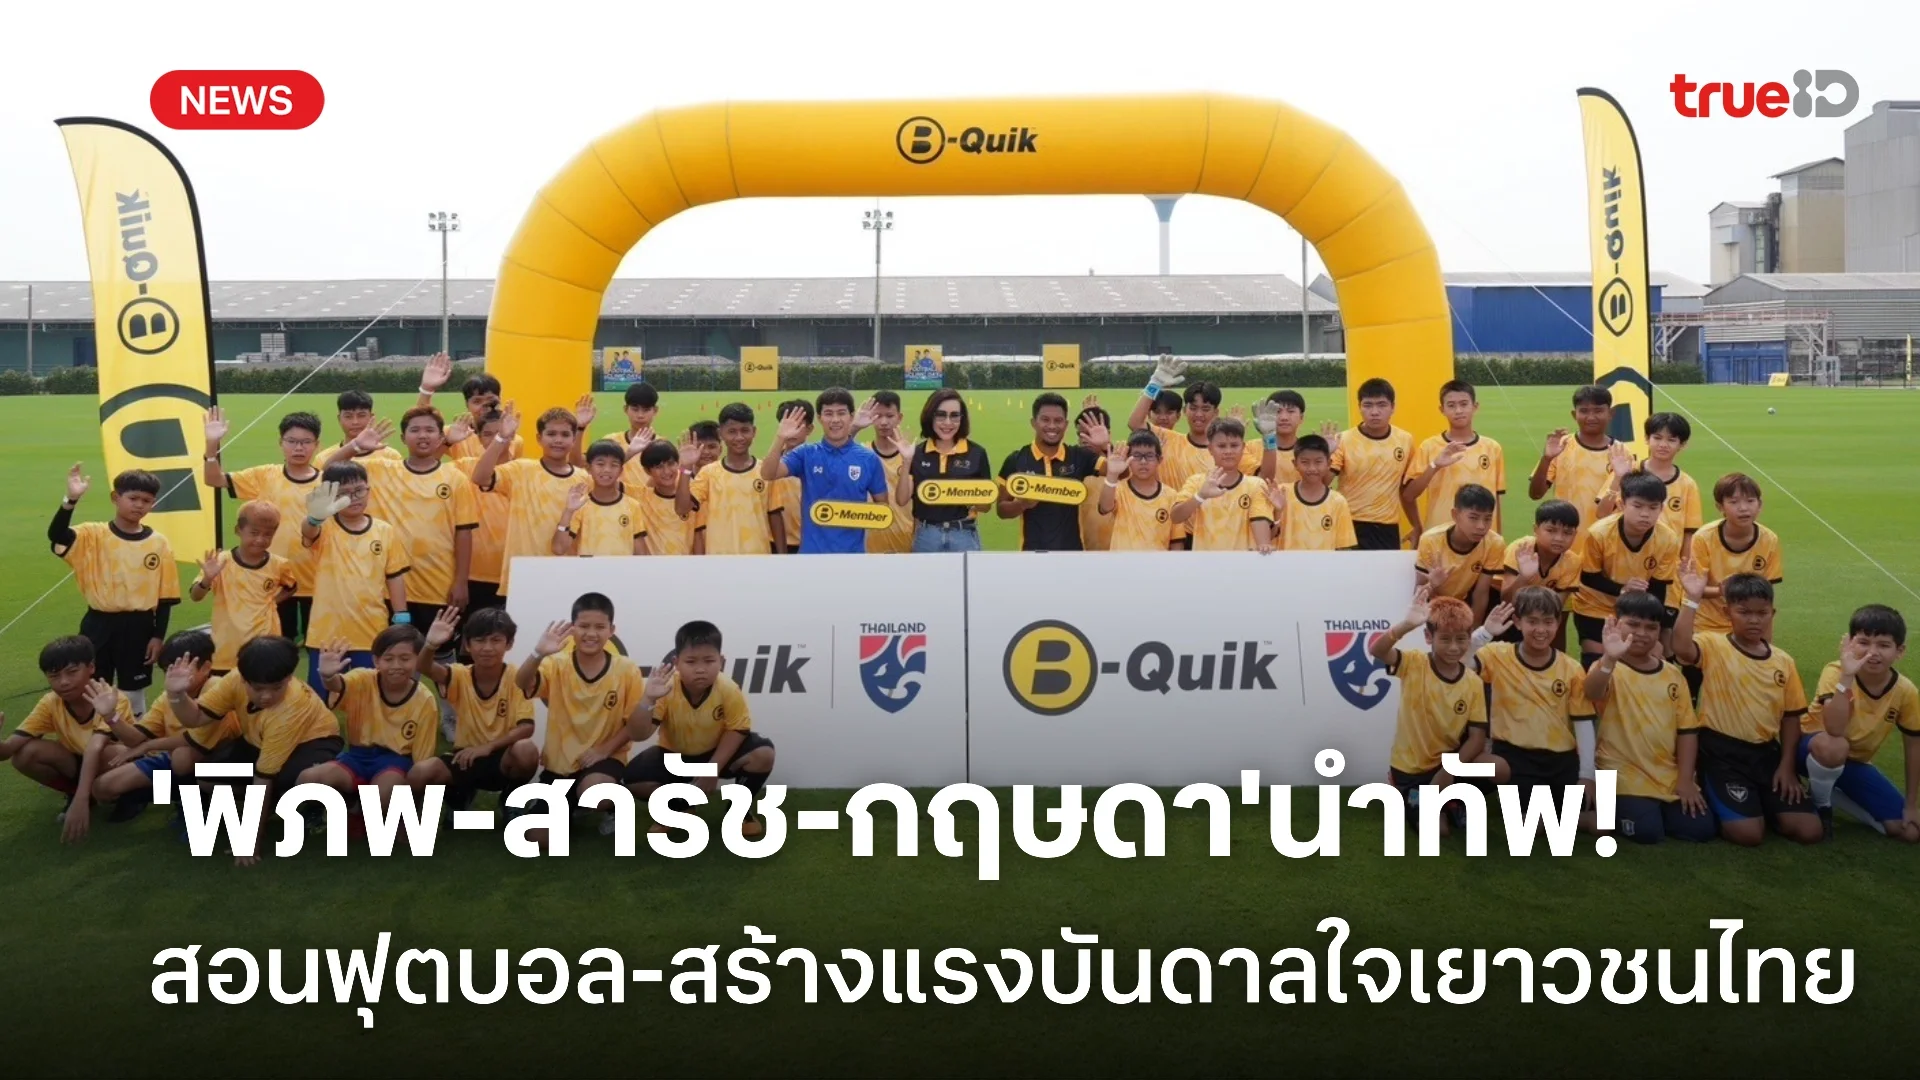 'พิภพ-สารัช-กฤษดา' ร่วมกิจกรรม B-Quik สอนฟุตบอลเยาวชนไทย-พบปะแฟนคลับ